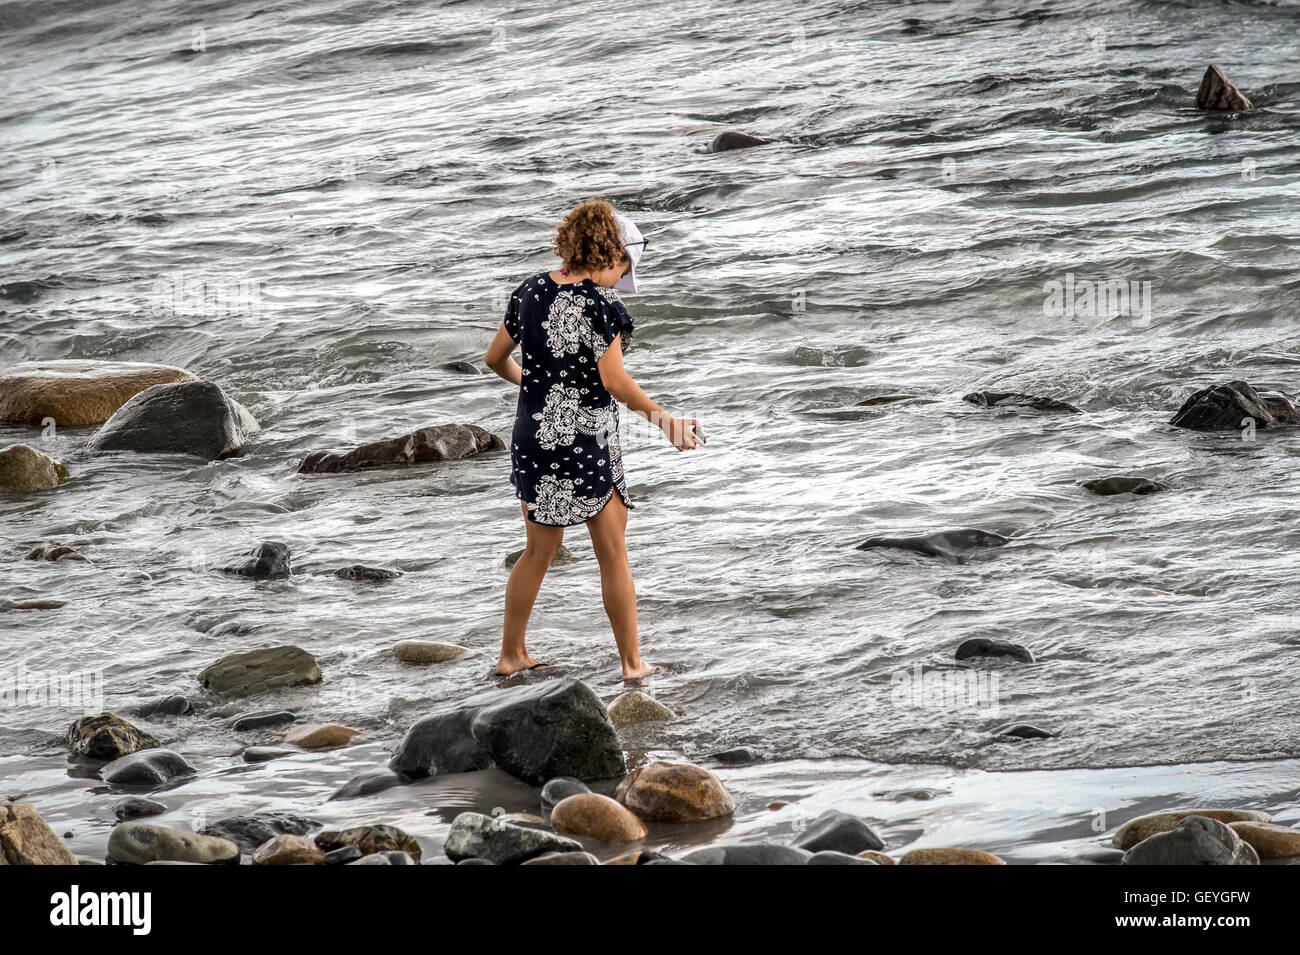 Une fille promenades le long du bord des océans à la recherche de trésors à ramener chez elle à garder ses souvenirs d'été avec elle. Banque D'Images